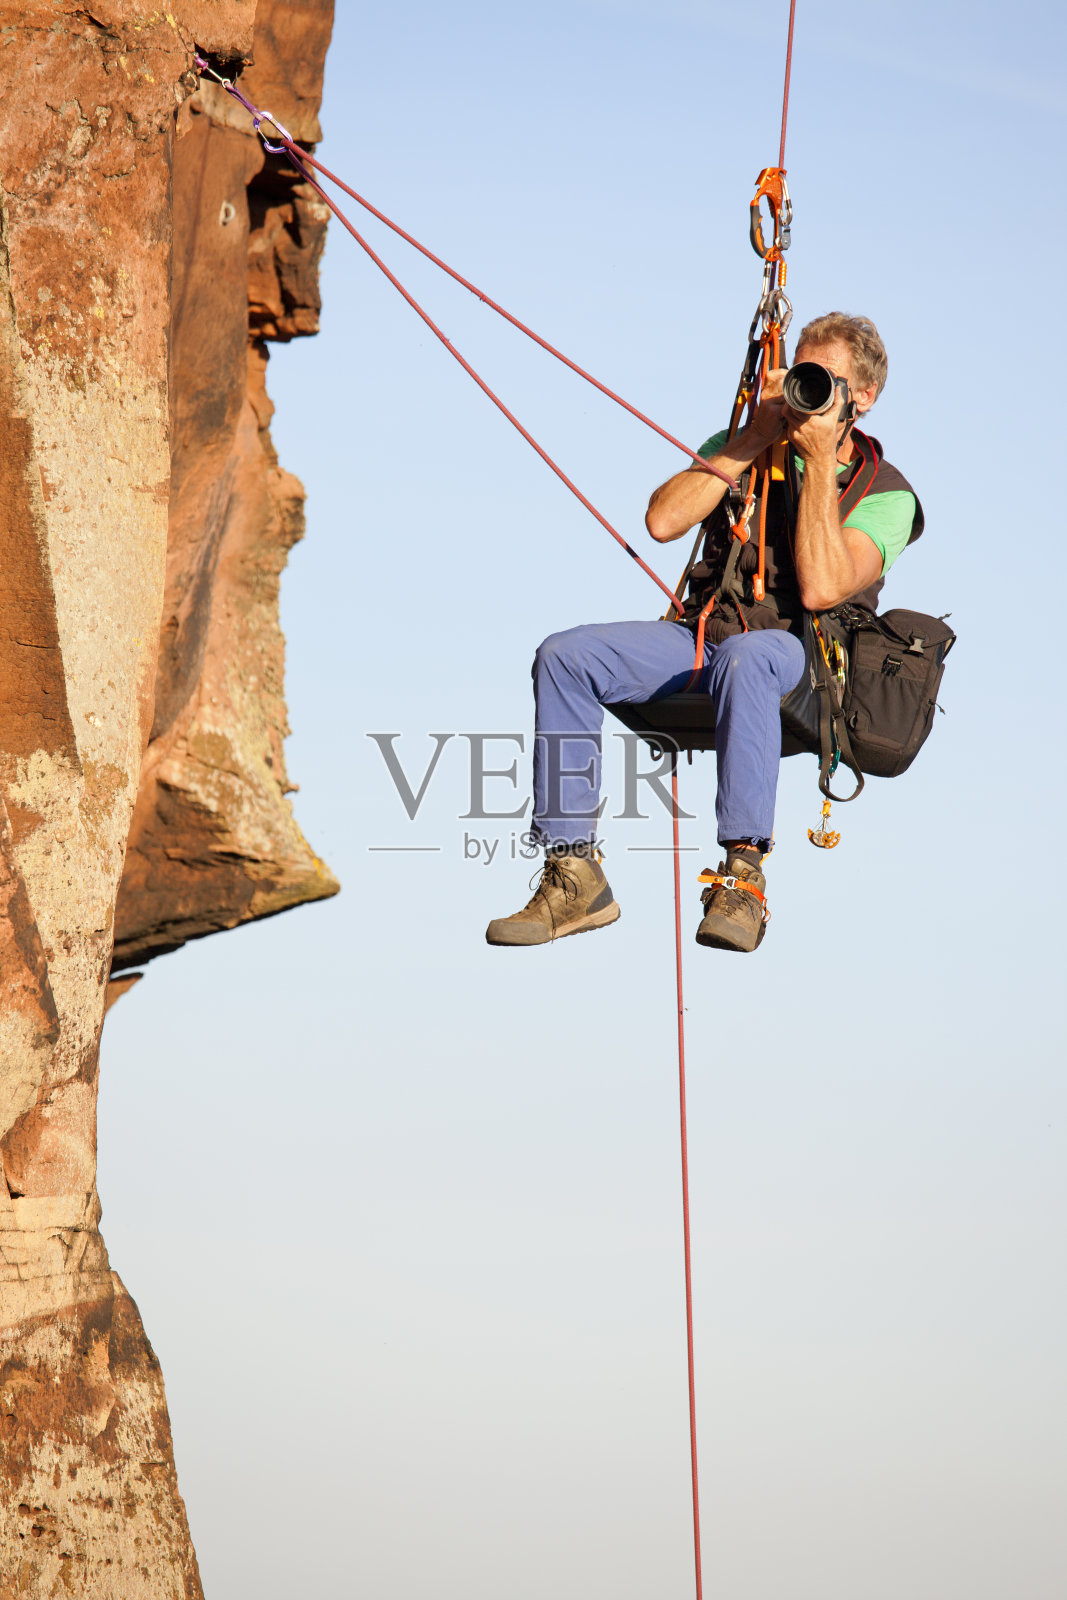 摄影师和攀岩者诺伯特·弗兰克挂在岩石前拍照照片摄影图片